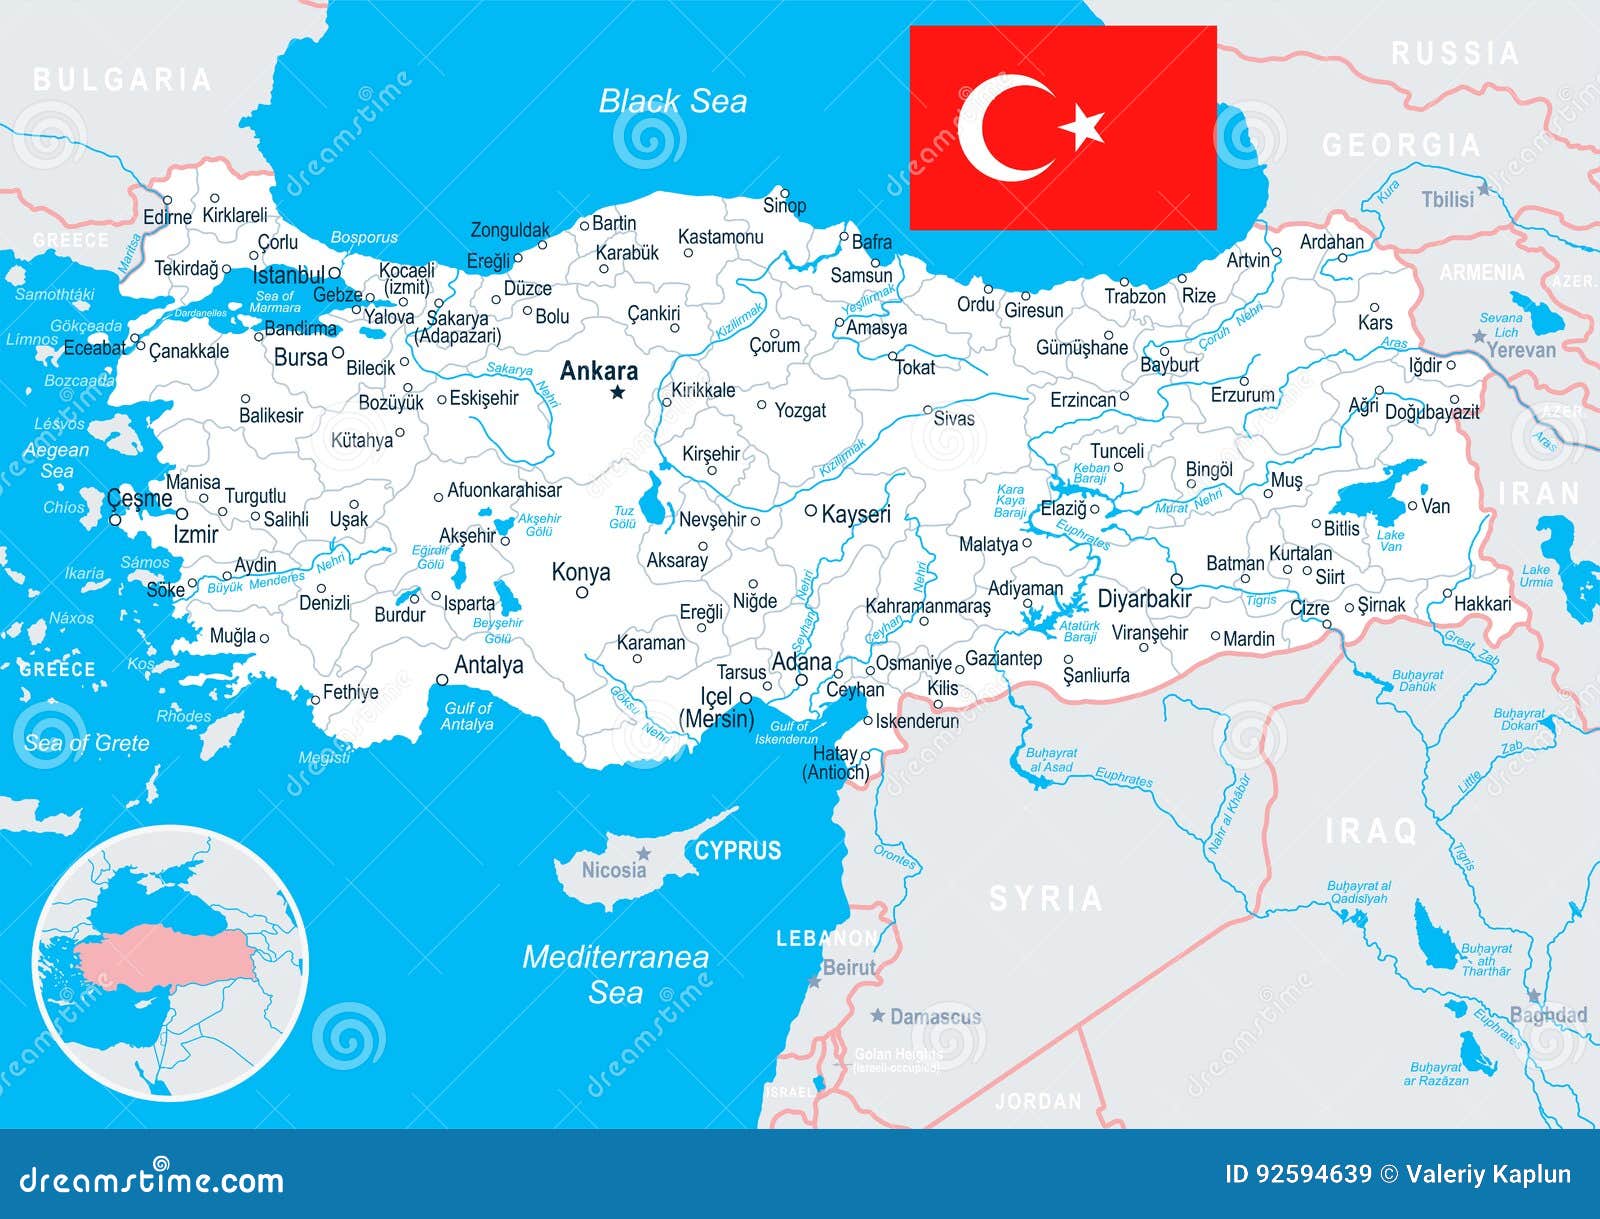 Image bandirma sur la carte géographique de turquie